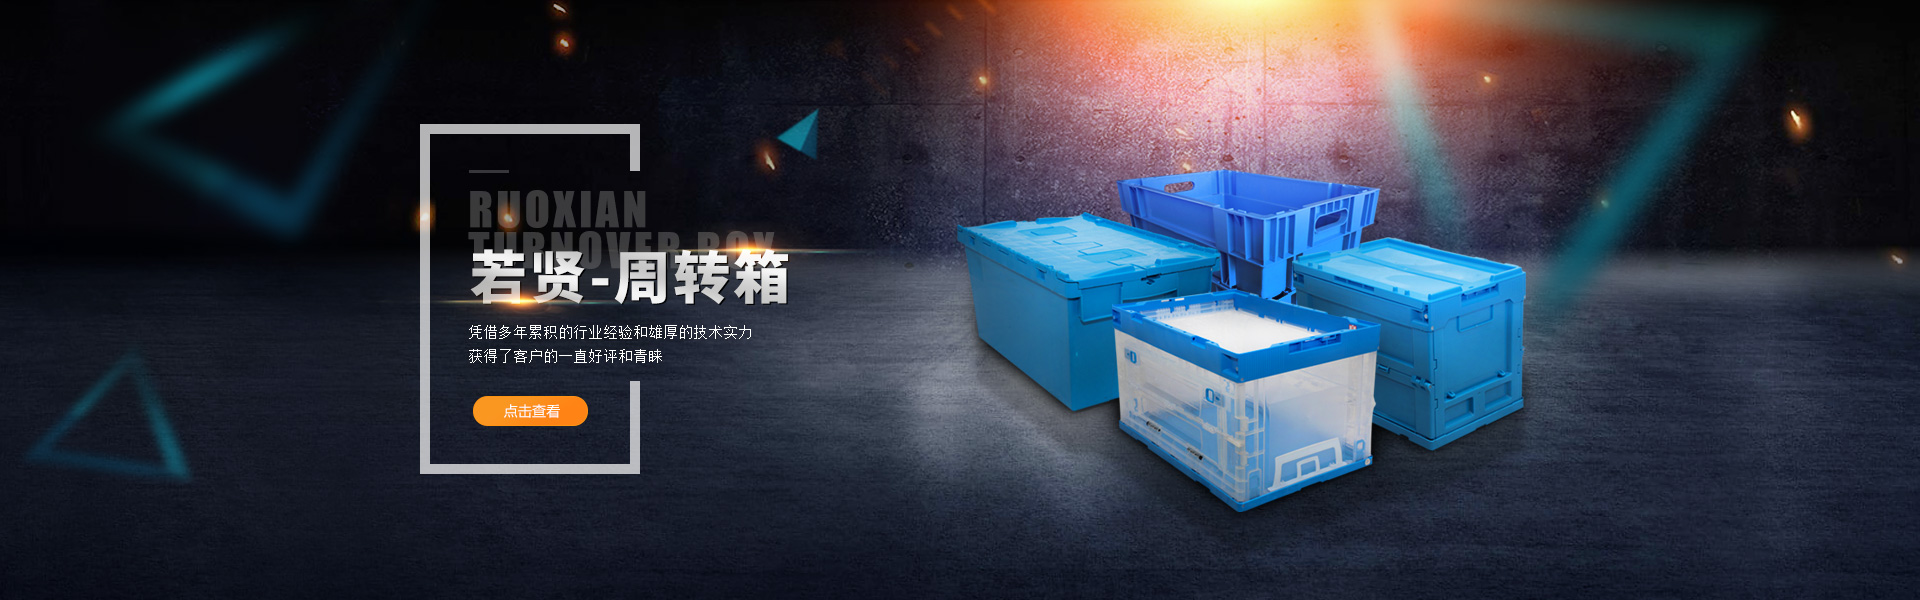 青島若賢自動化主營零件盒,塑料零件盒,塑料托盤等產品!